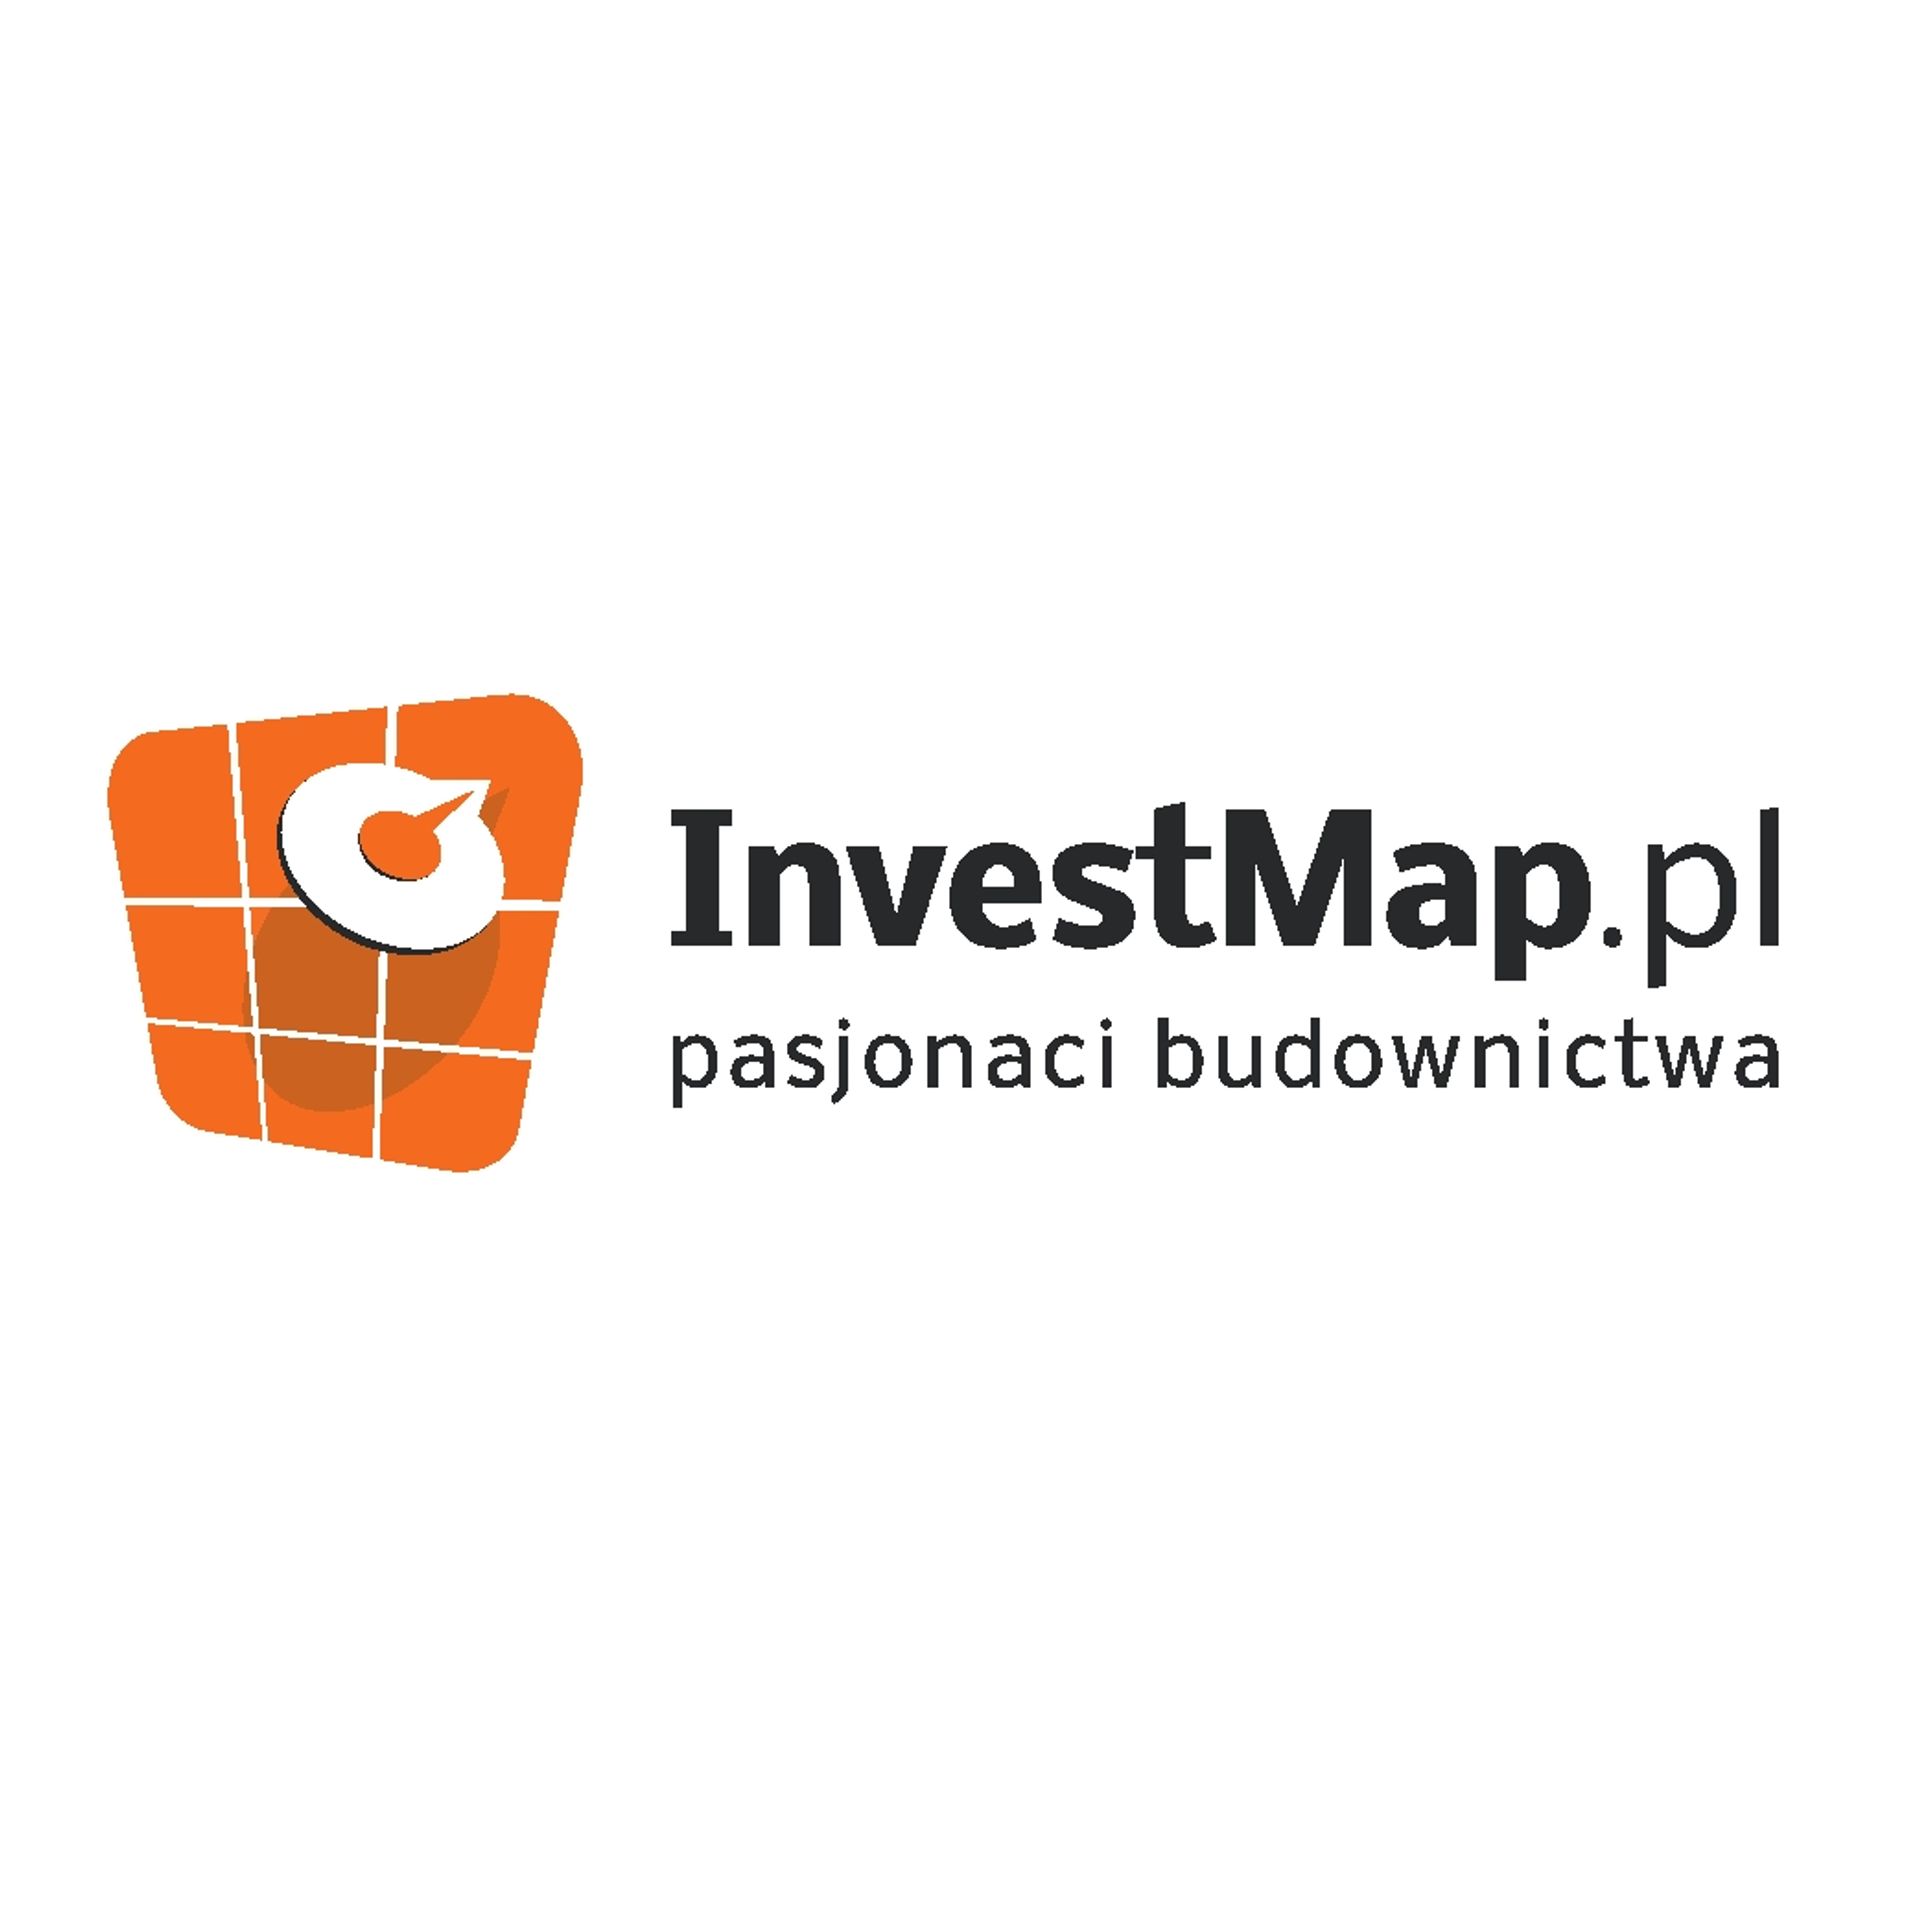  Znajdź nieruchomość na miarę swoich potrzeb z InvestMap.pl